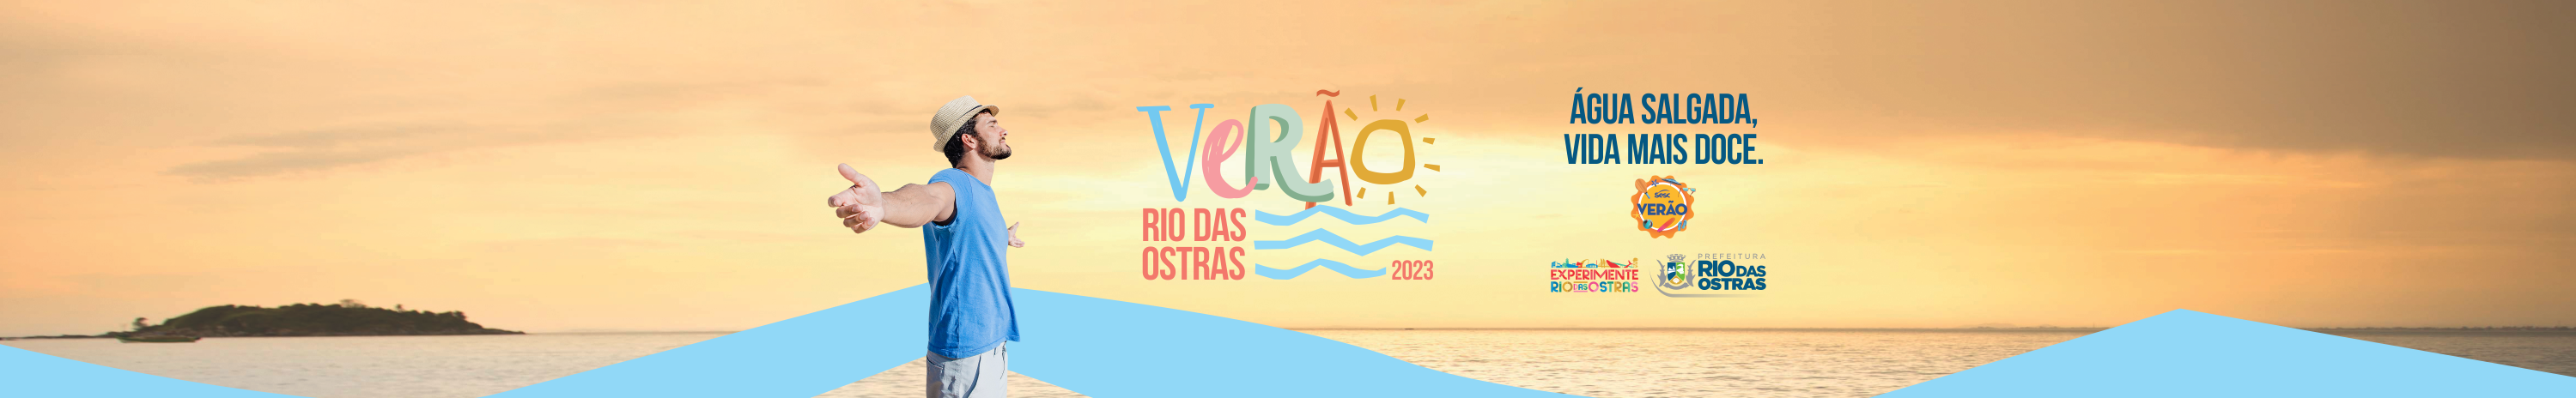 Capa da campanha Verão Rio das Ostras com o mar ao fundo e um homem de braços abertos em direção ao sol